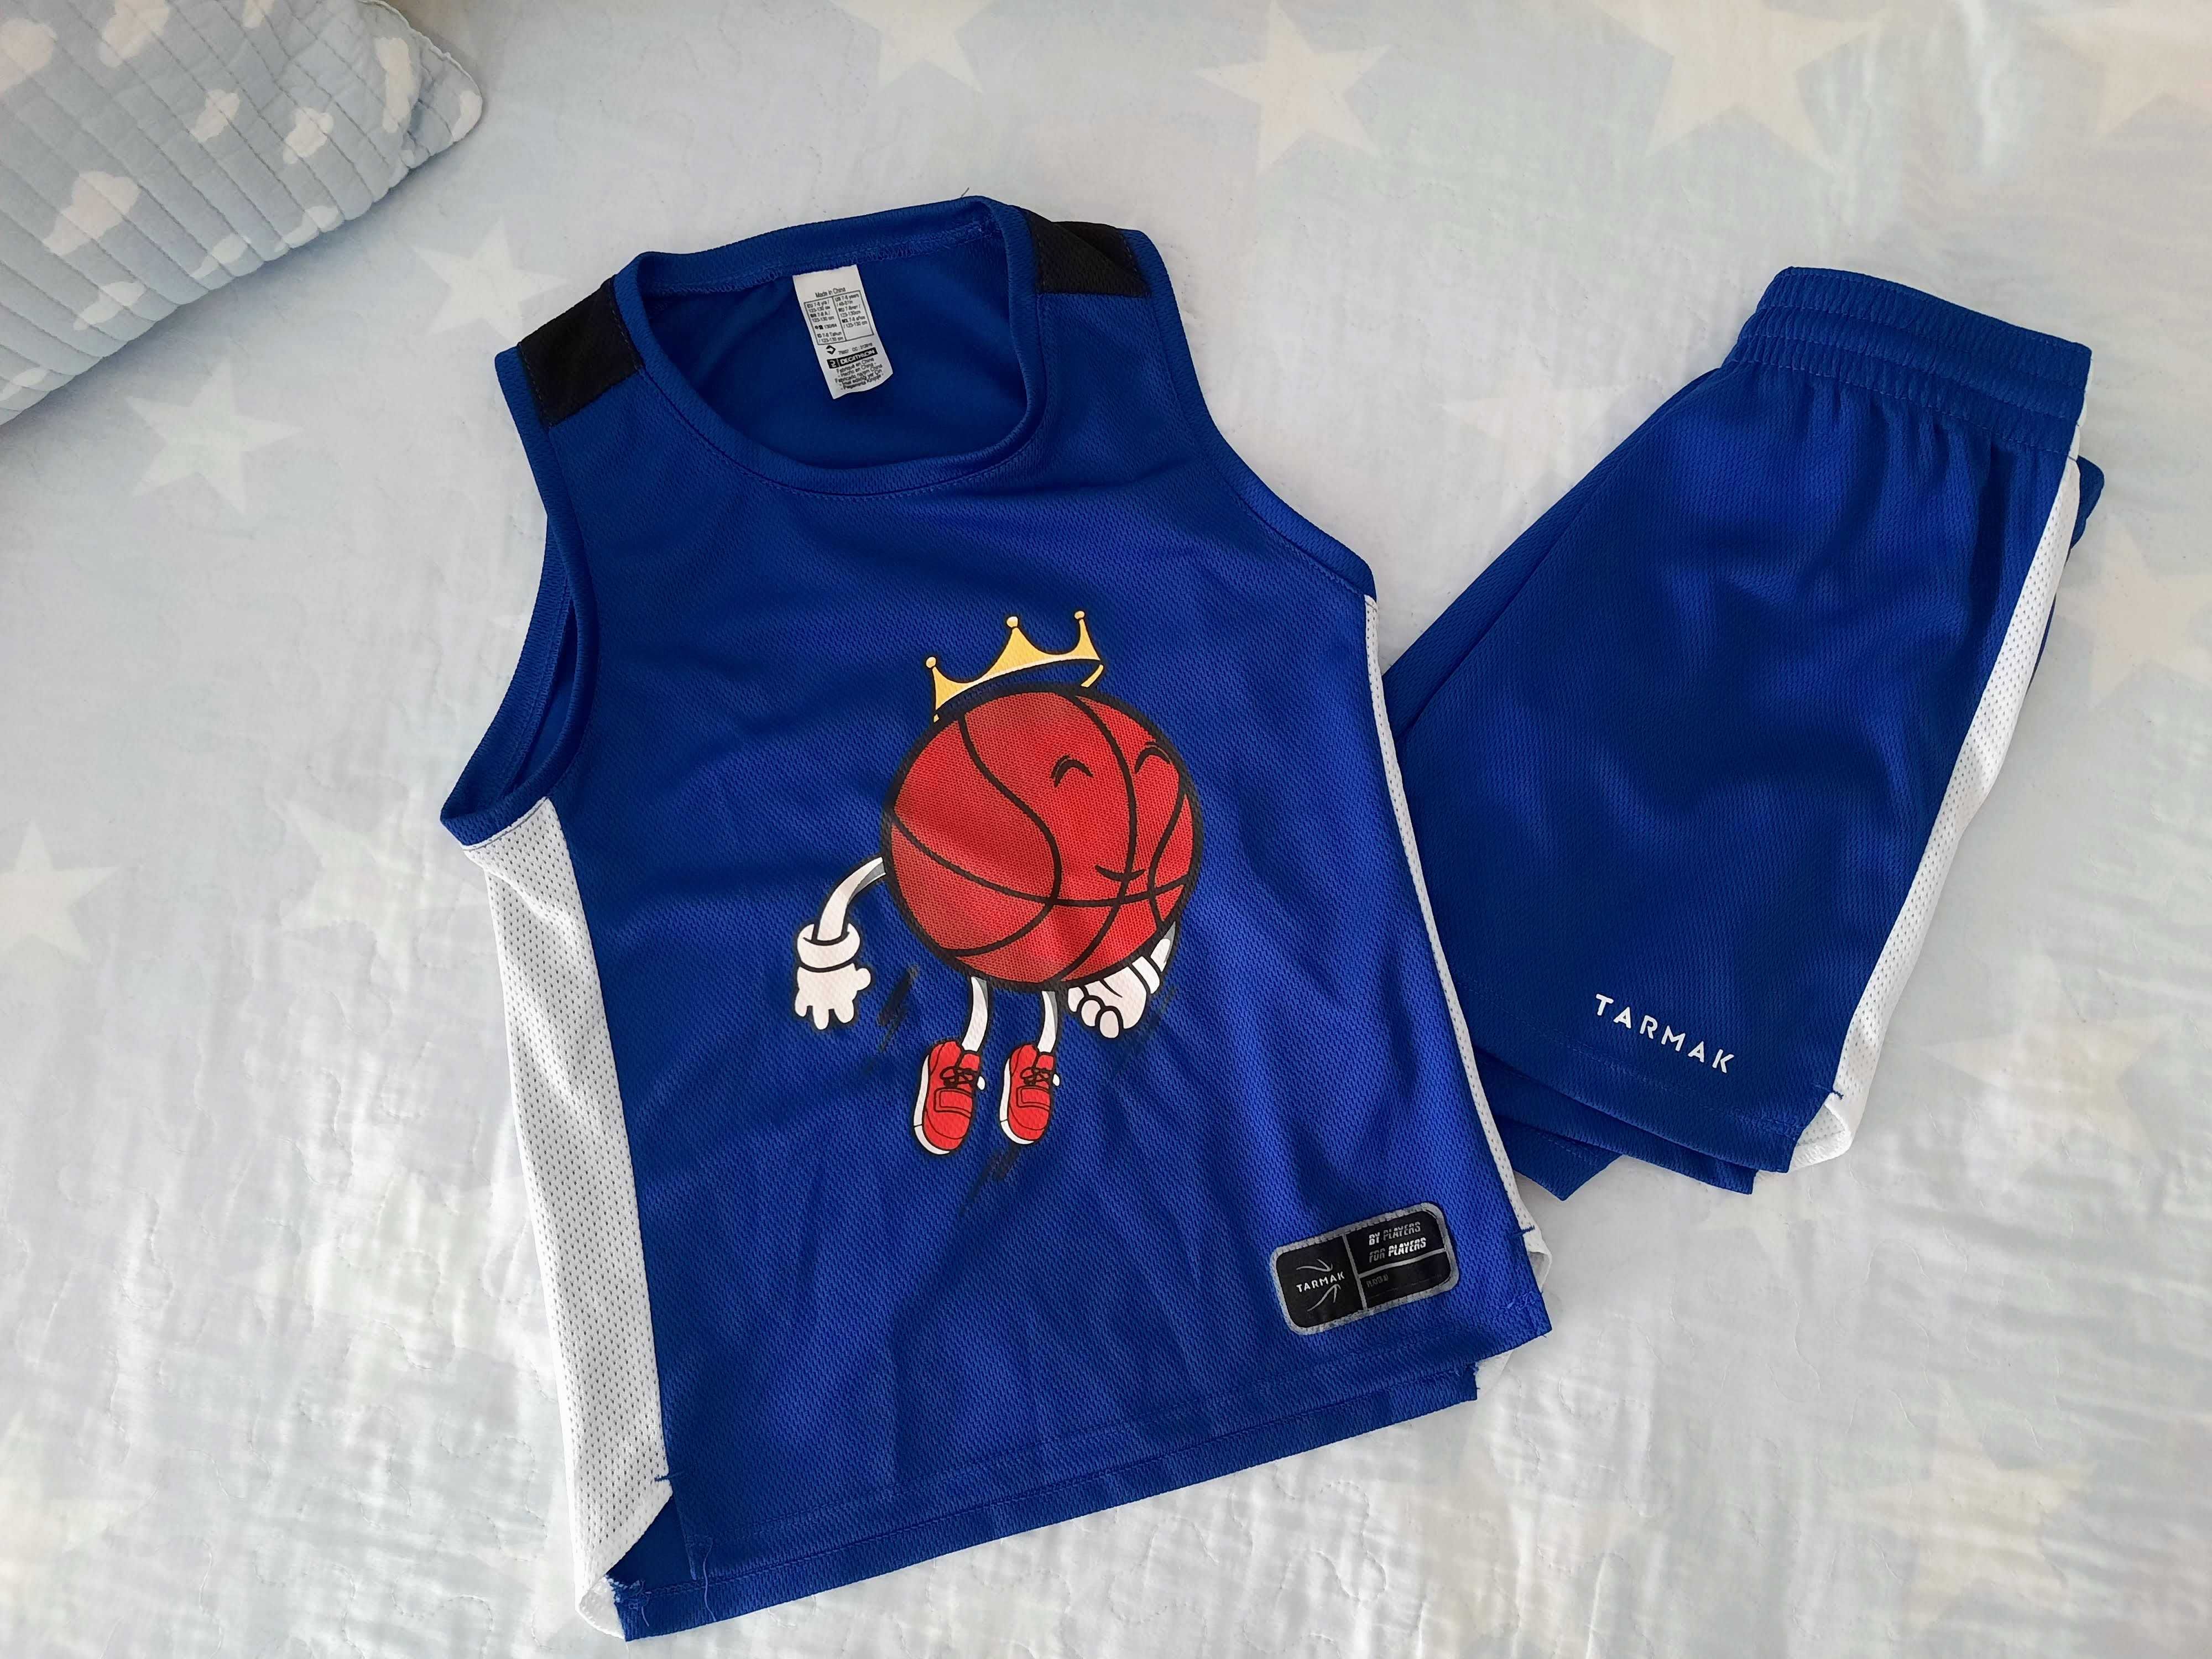 Conjunto desportivo (calções e tshirt) para basquetebol - 7/9 anos